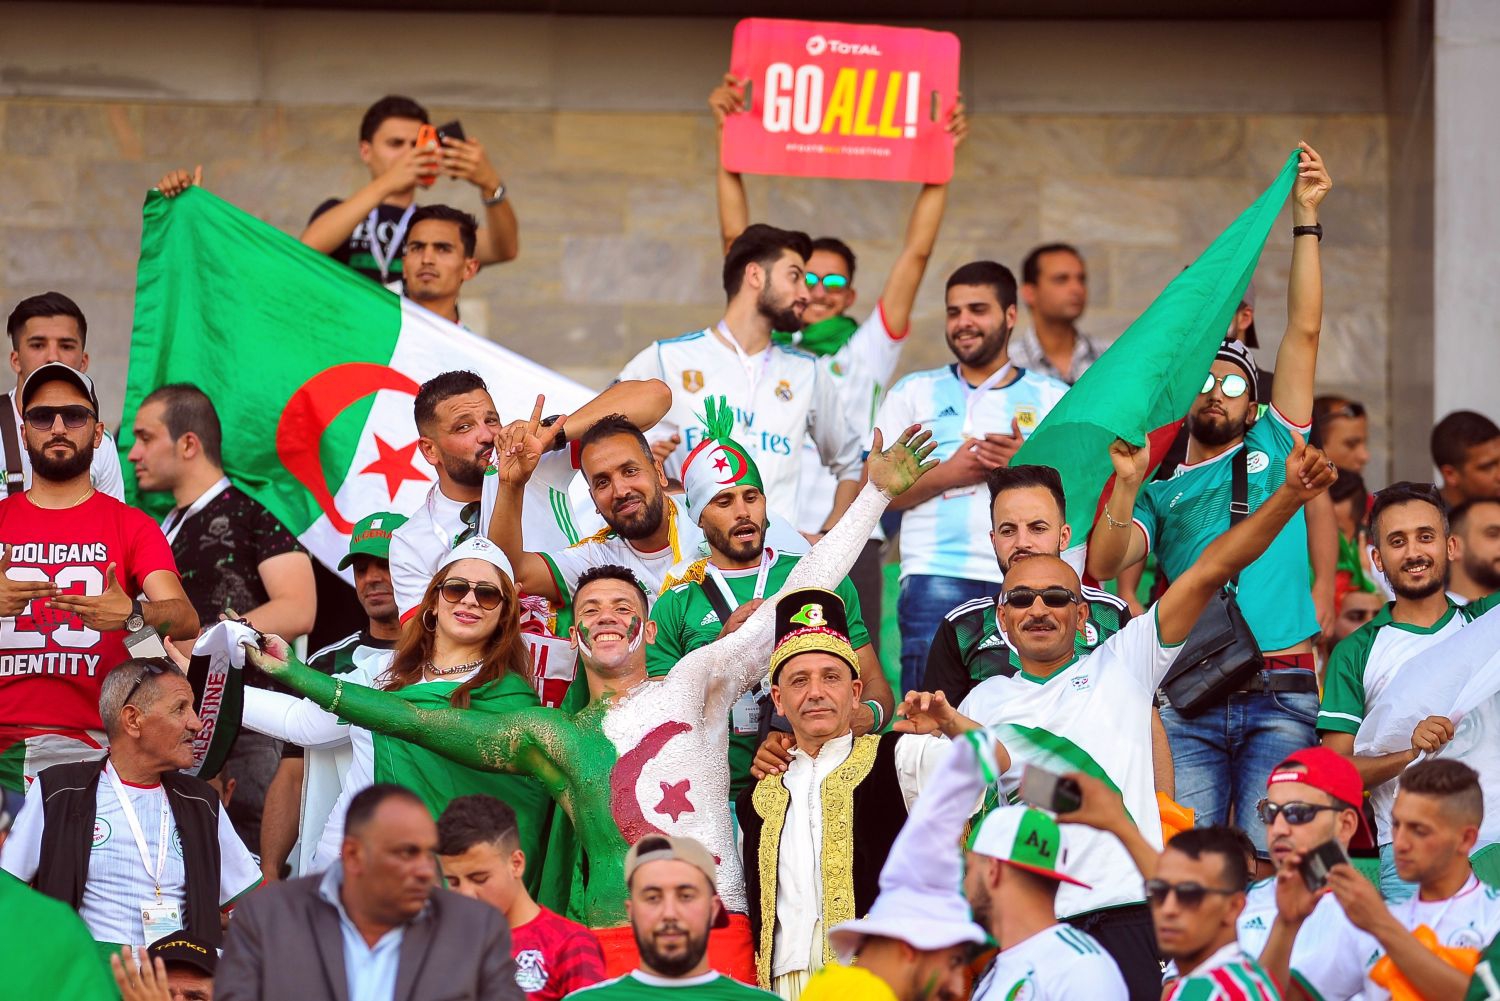 Reprezentacja Algierii wzmocniona przed Pucharem Narodów Afryki 2023. Transfer z Francji [OFICJALNIE]